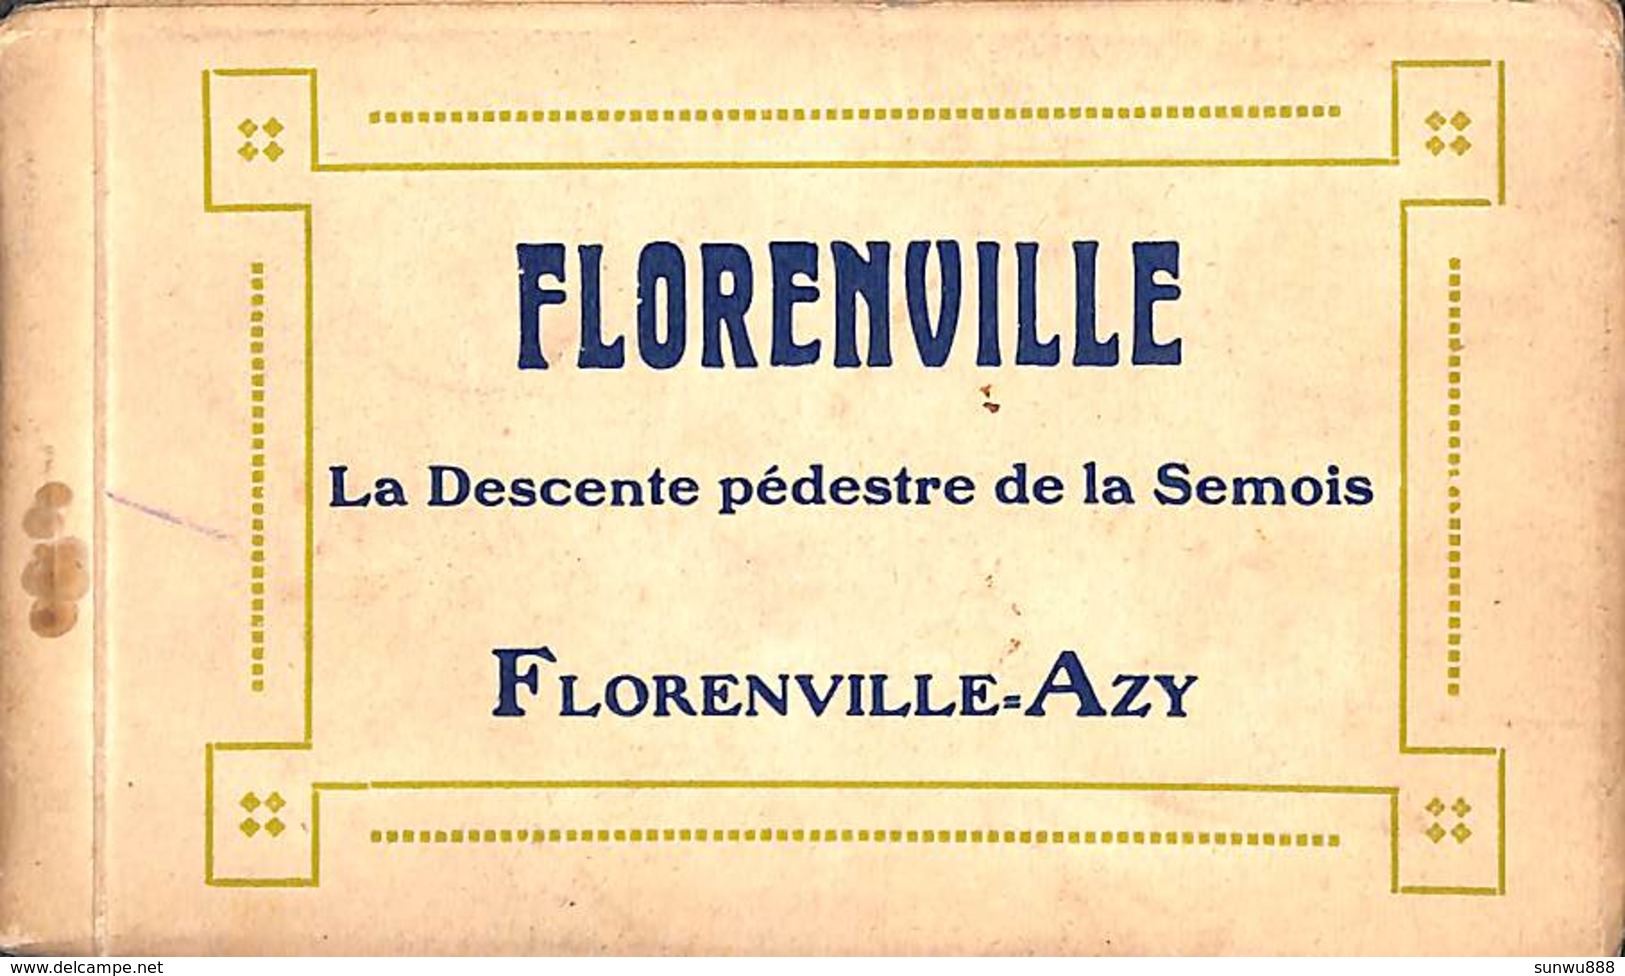 Florenville Azy - Carnet complet La Descente pédestre de la Semois (Duparque, Bazar, Florenville)